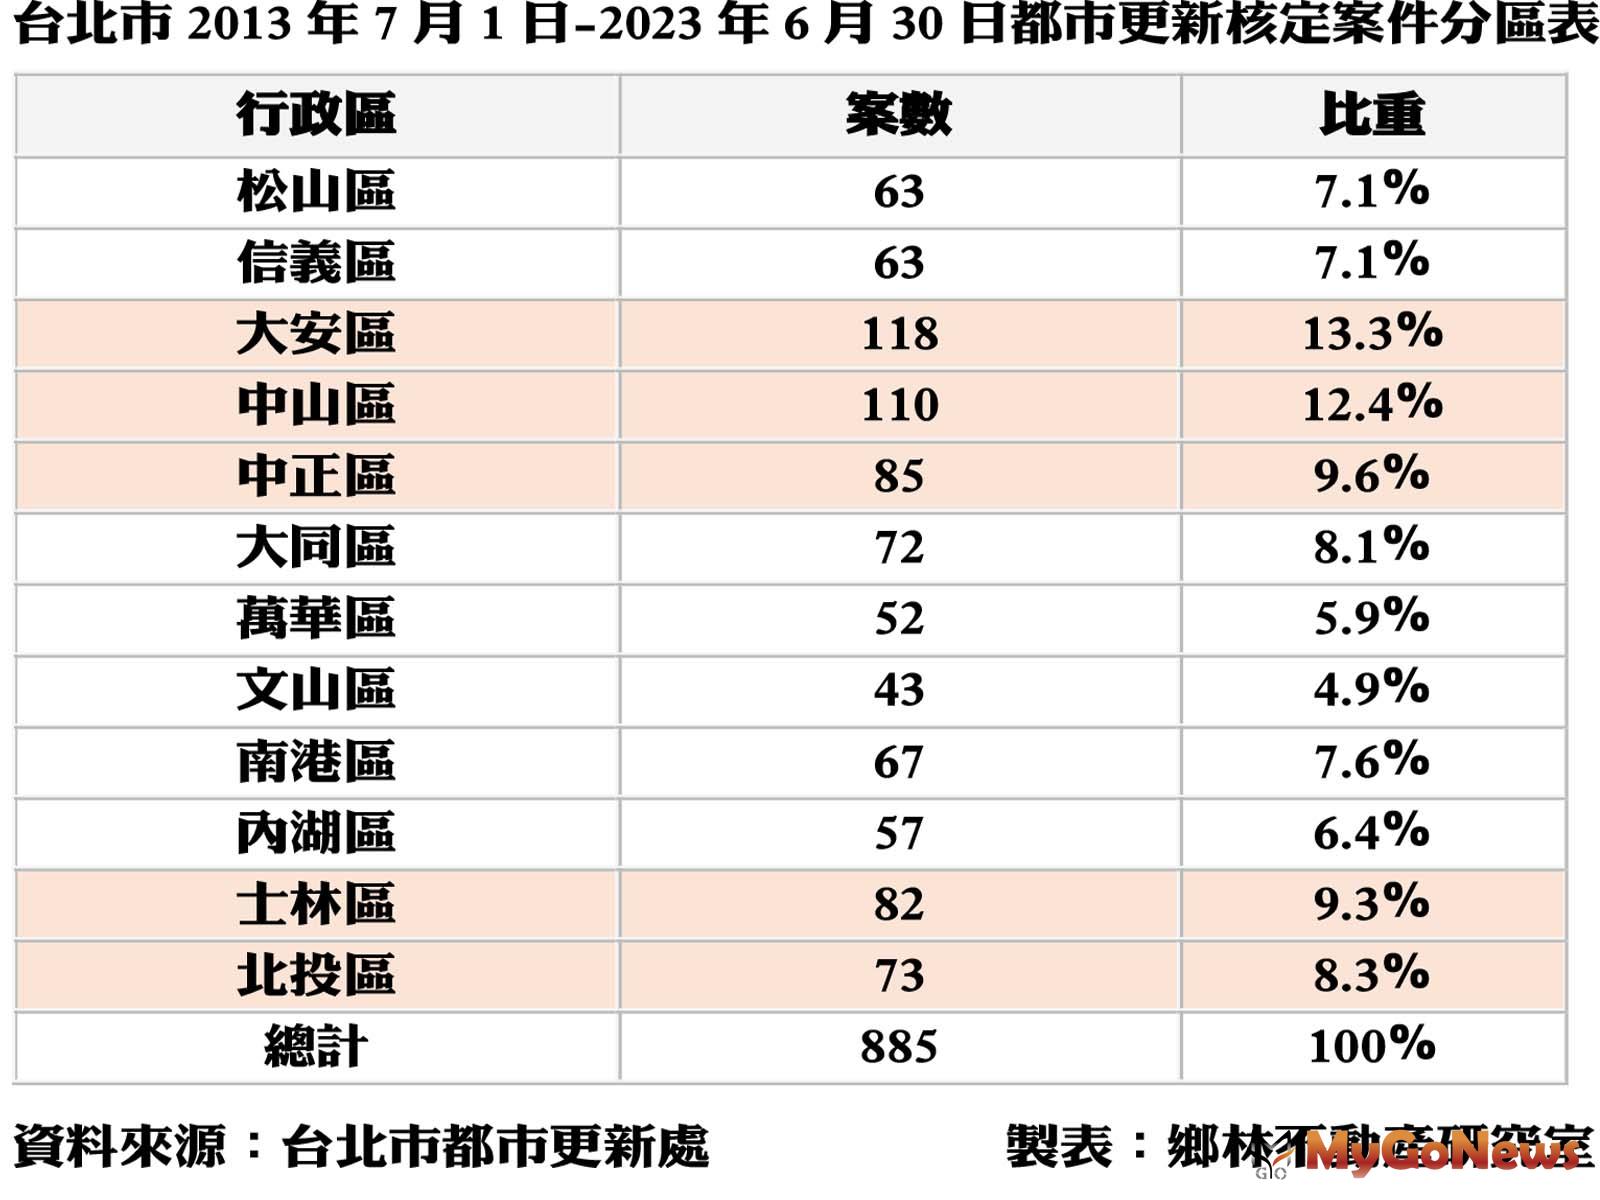 台北市2013年7月1日 -2023年6月30日都市更新核定案件分區表 MyGoNews房地產新聞 市場快訊